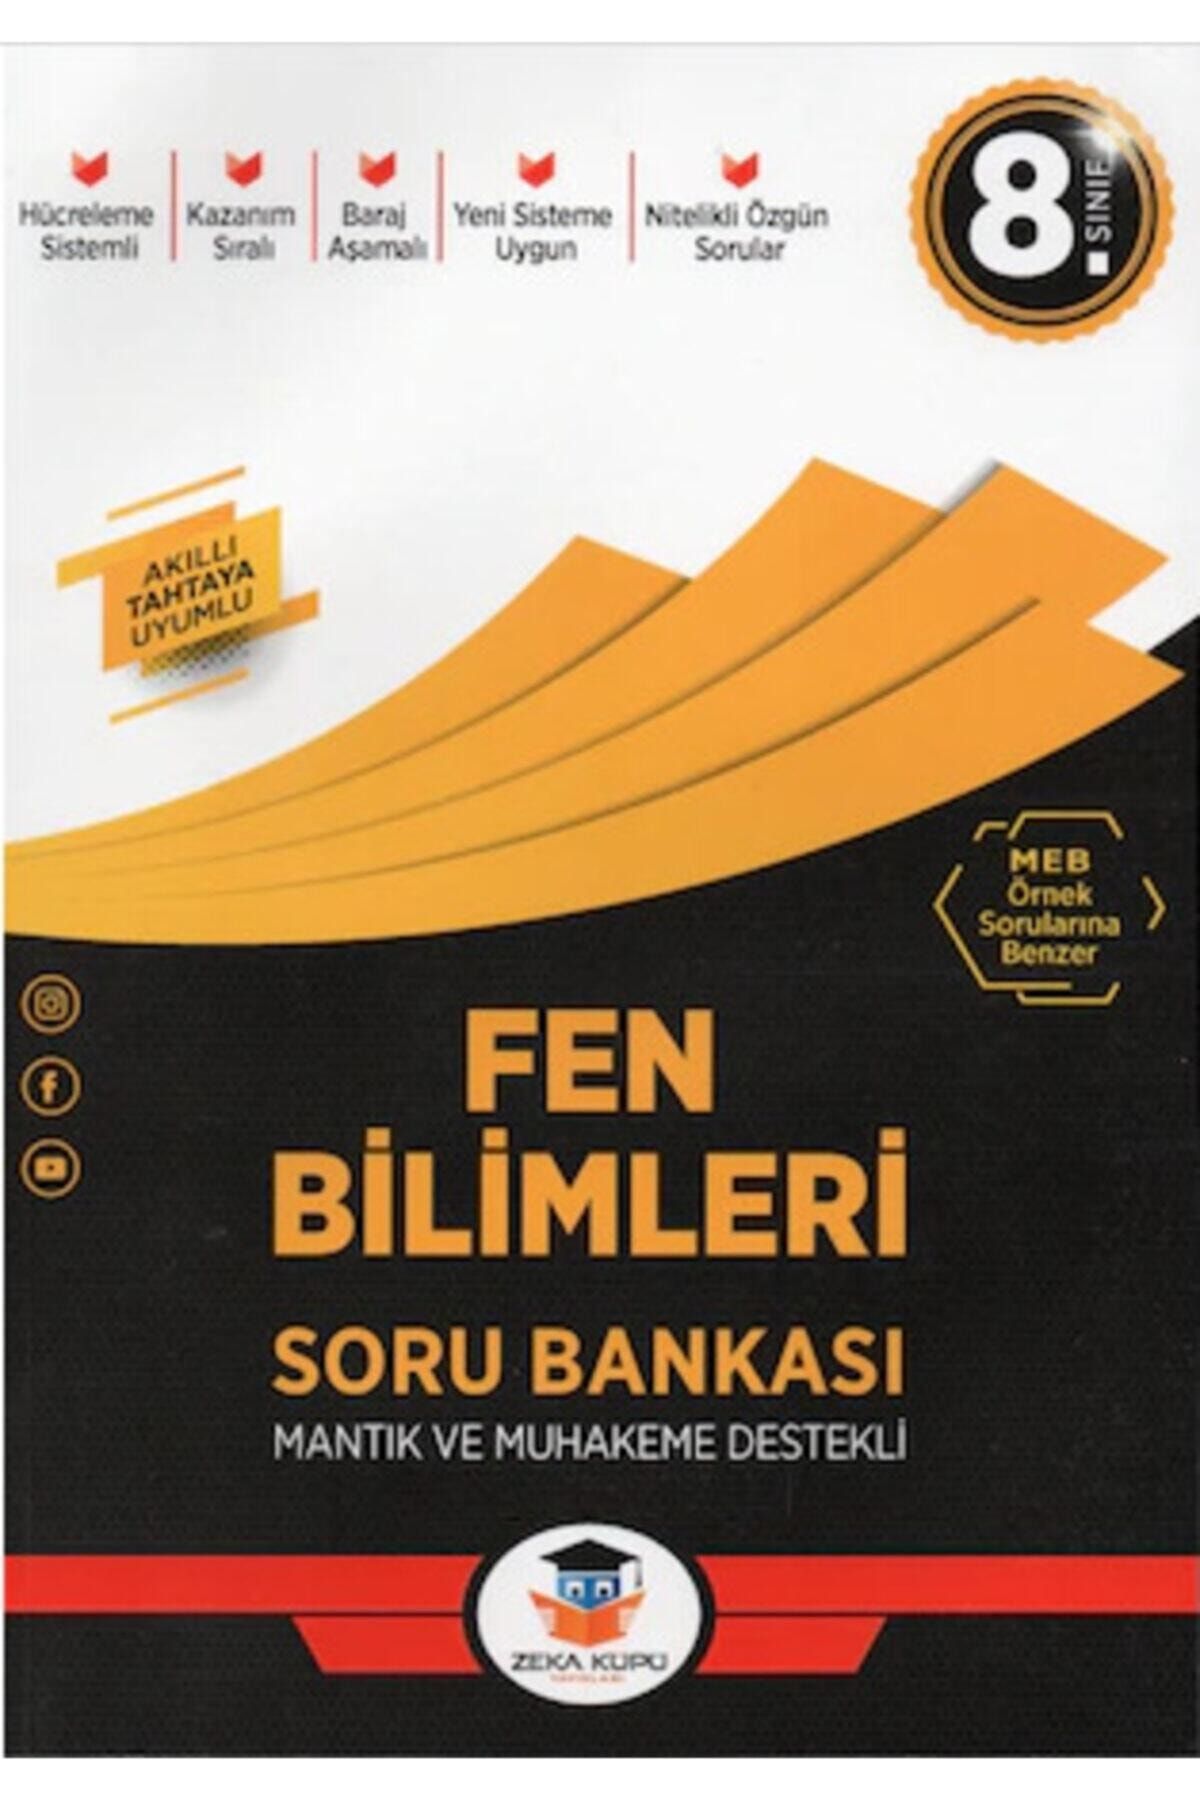 Zeka Küpü Yayınları Zeka Küpü 8.sınıf Lgs Fen Bilimleri Soru Bankası - 2021 Lgs Kitapları